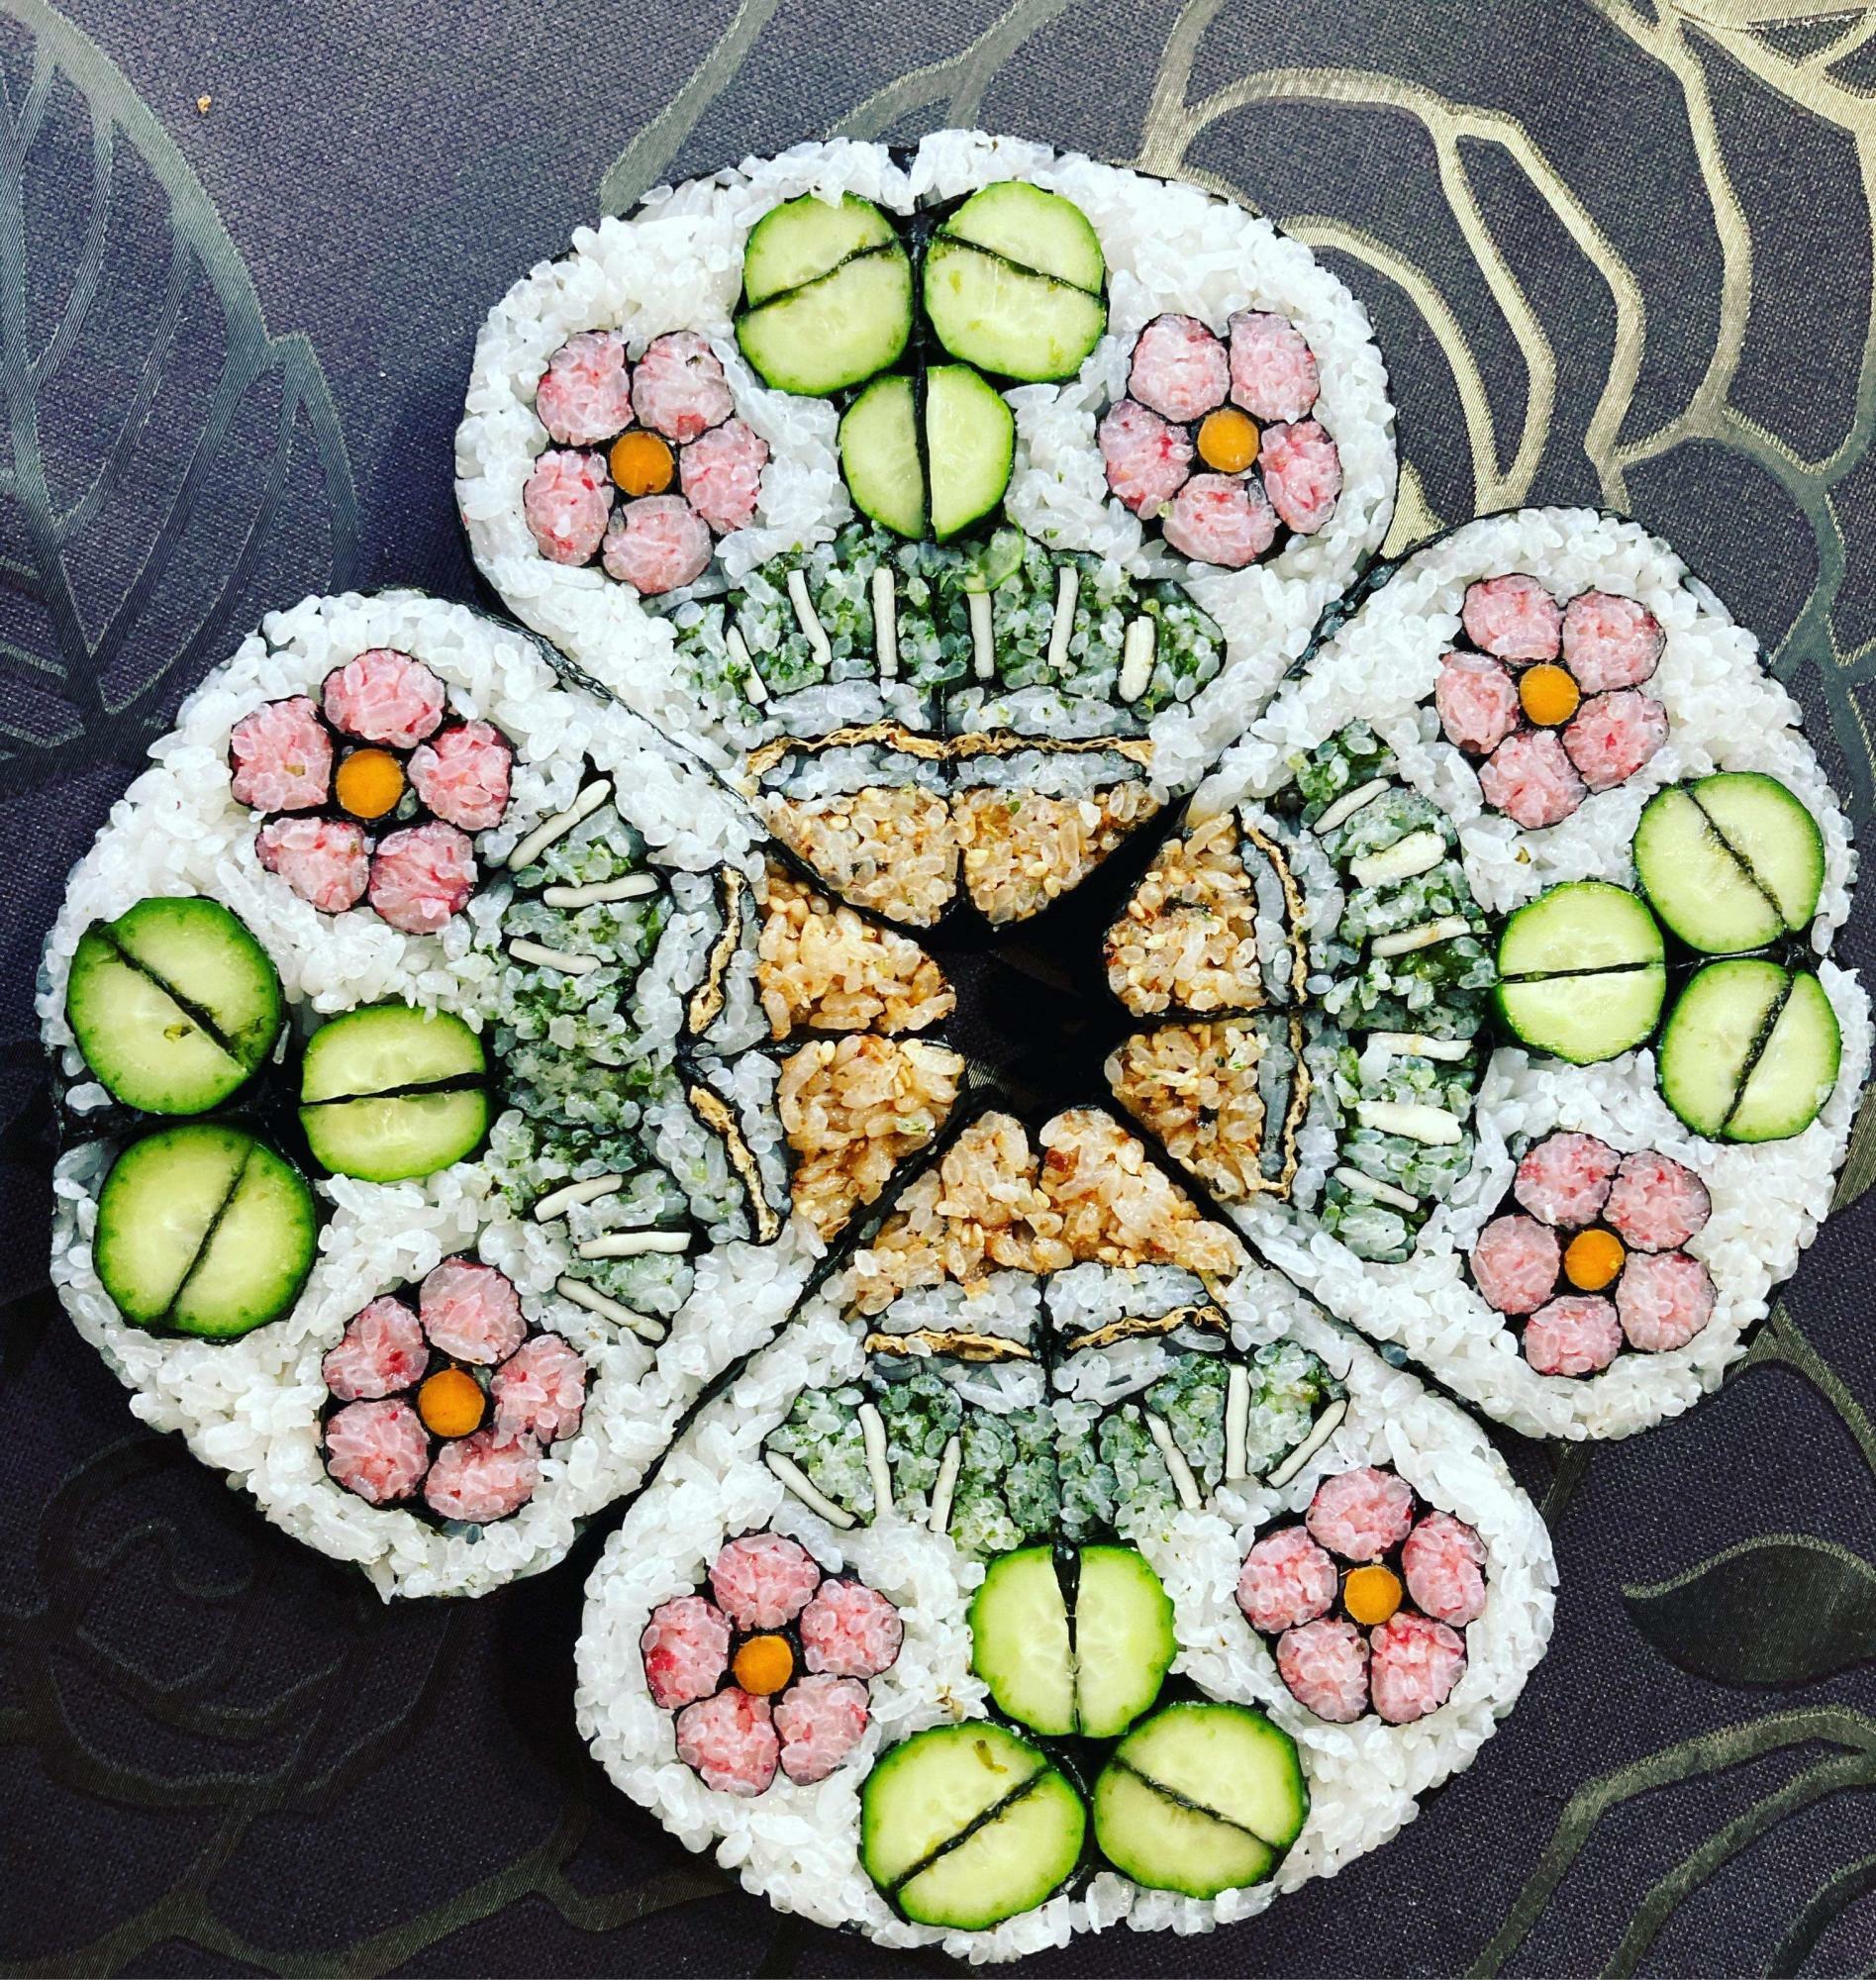 斎藤さんが作った飾り巻き寿司